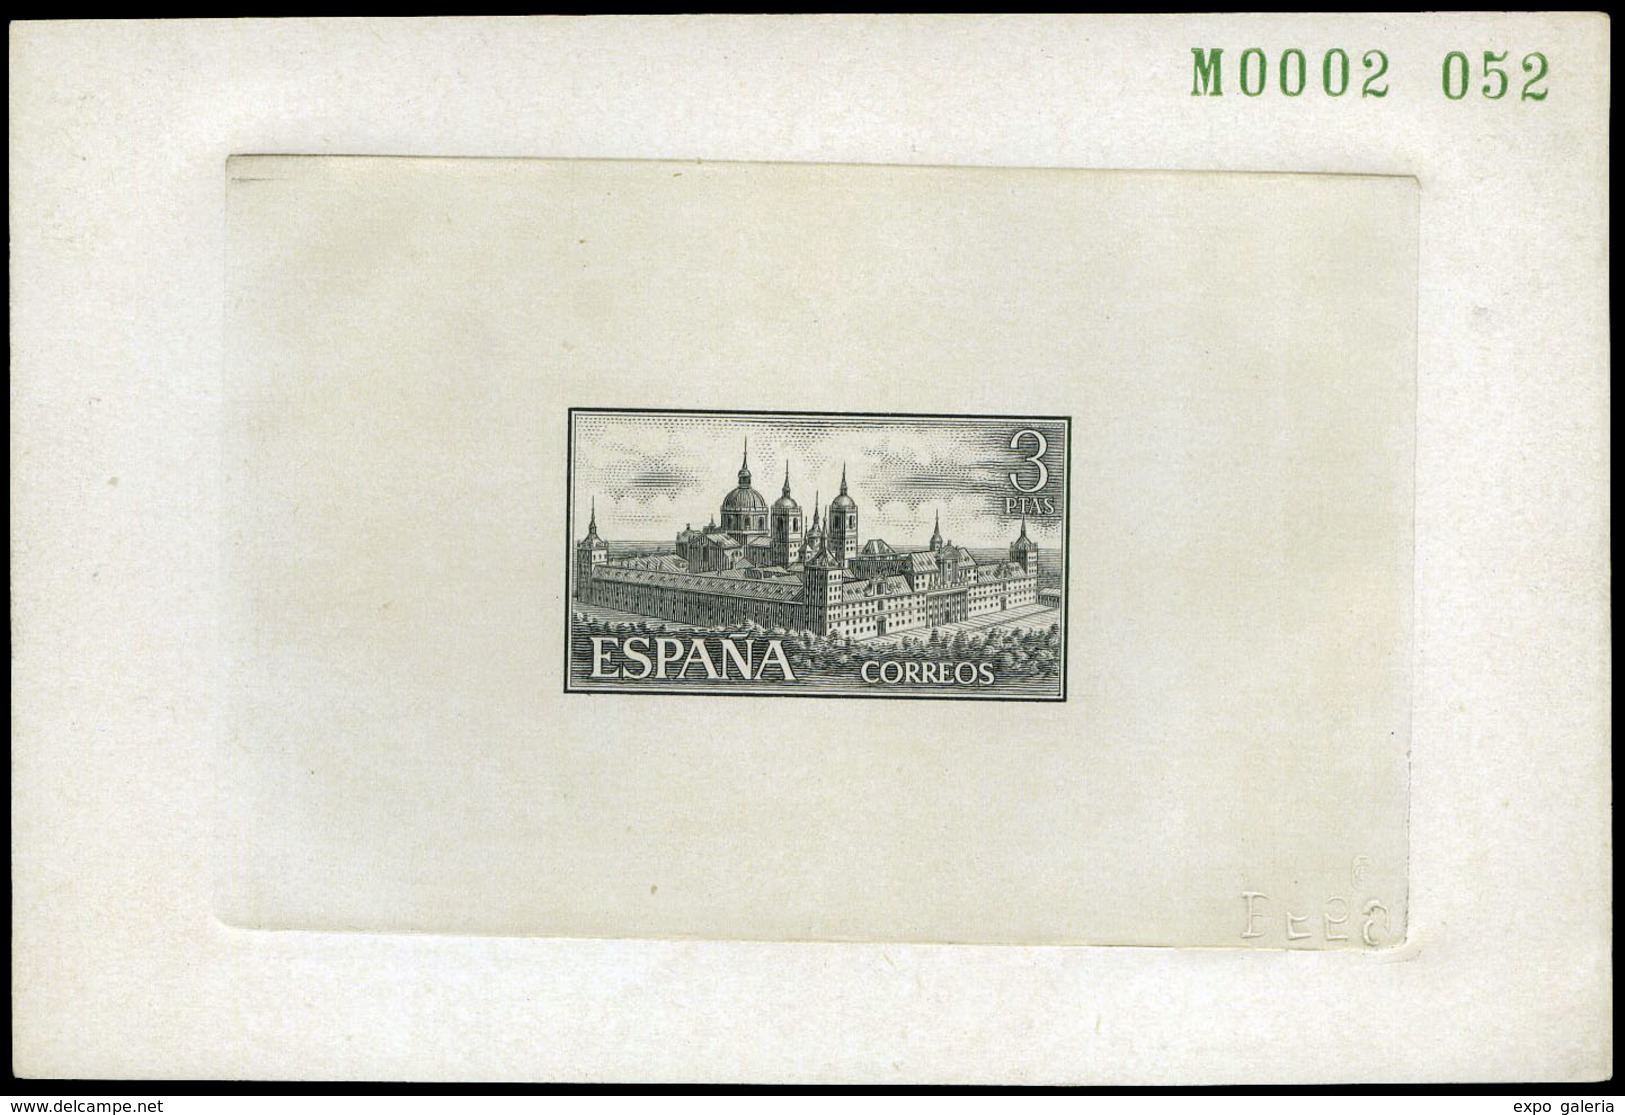 Año 1961 - El Escorial. Prueba De Punzón, Mismo Diseño Nº 1384, Con Valor 3 Ptas. Excepcional Rareza - Covers & Documents